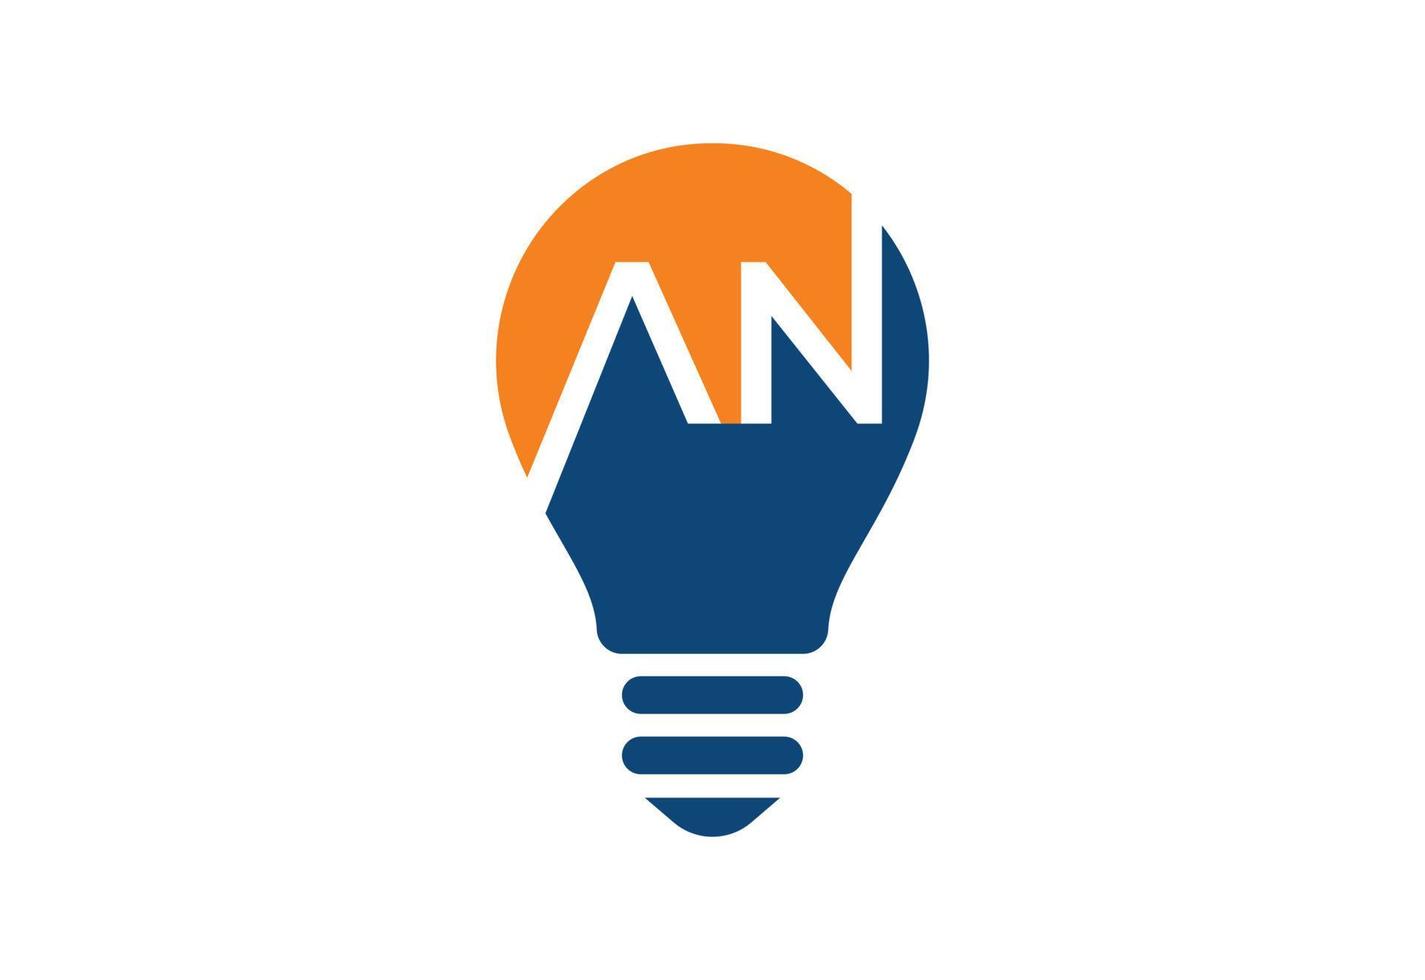 logo d'ampoule créative avec lettre, concept de design vectoriel